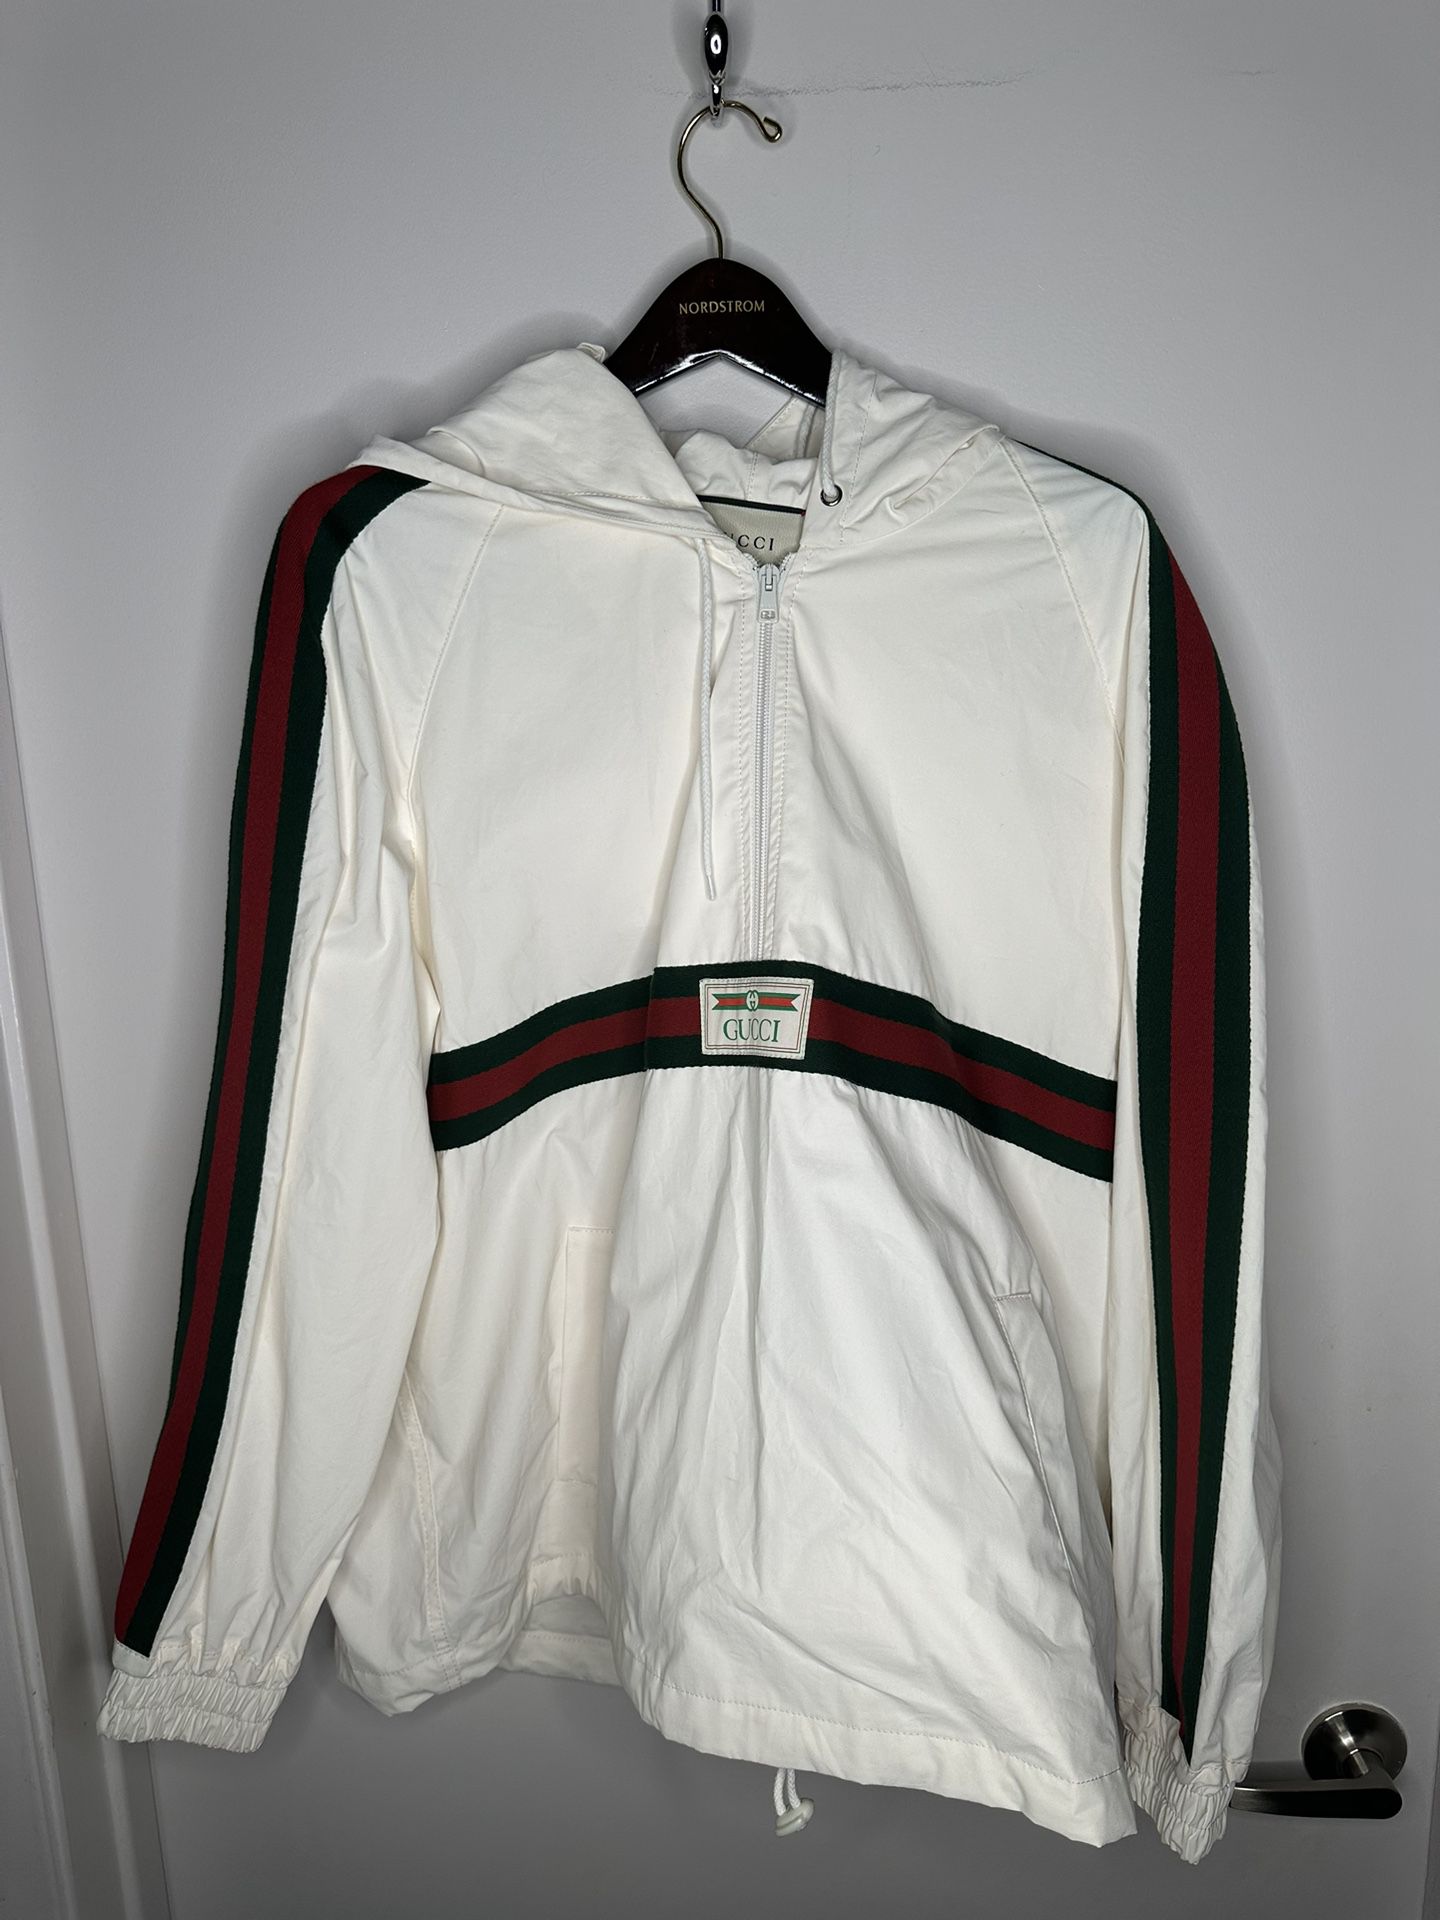 Men’s Gucci windbreaker off-white jacket w hood Size 46 NWT